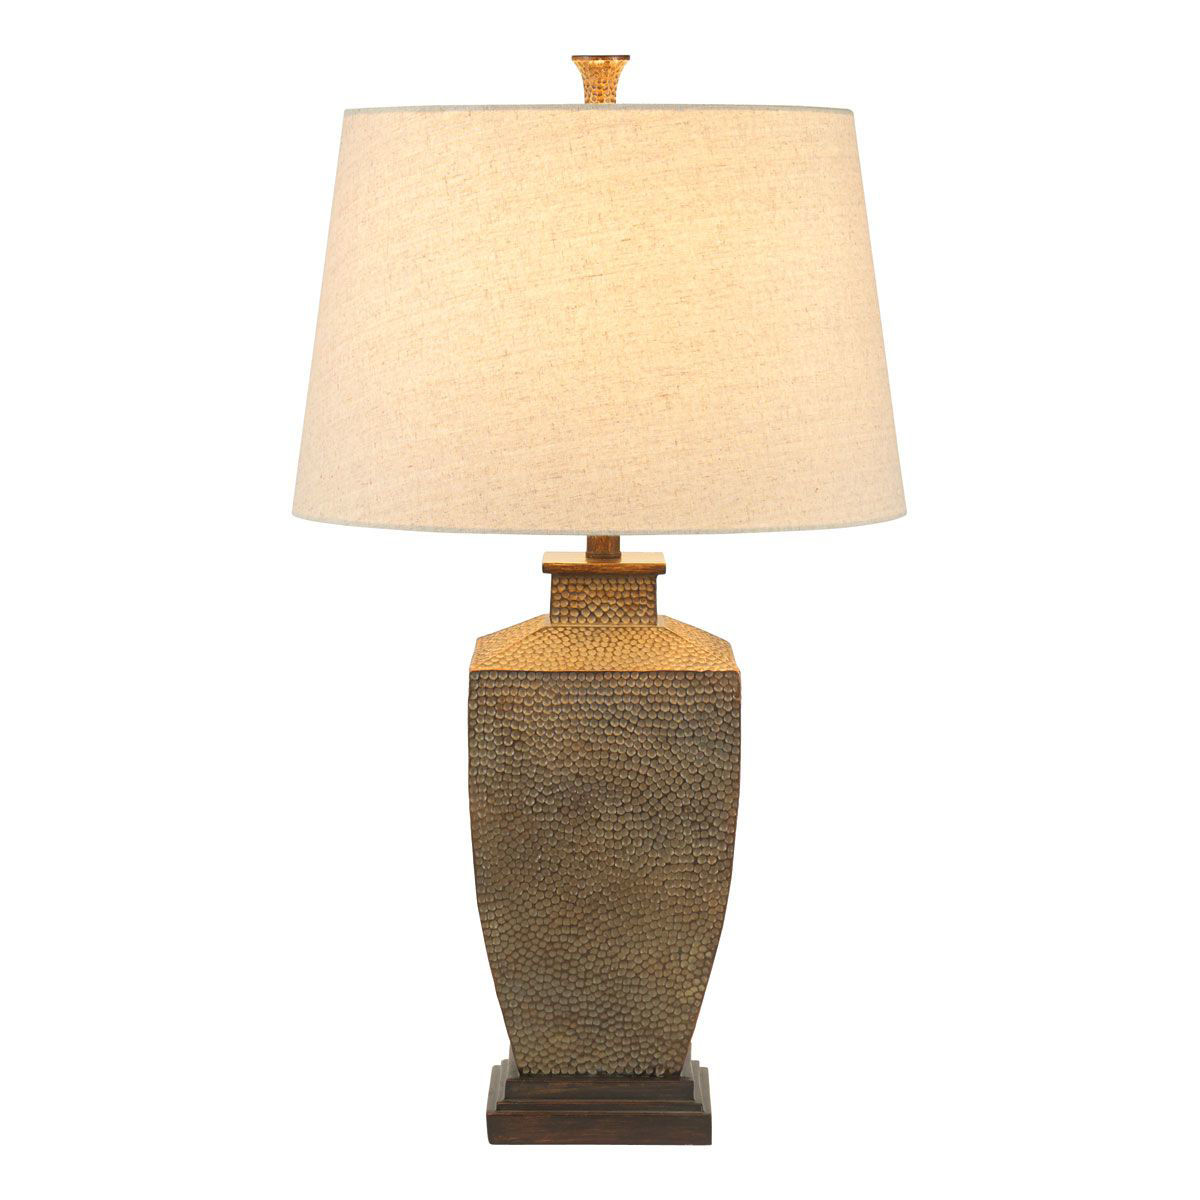 LAPIS LAMP | Badcock Home Furniture &more